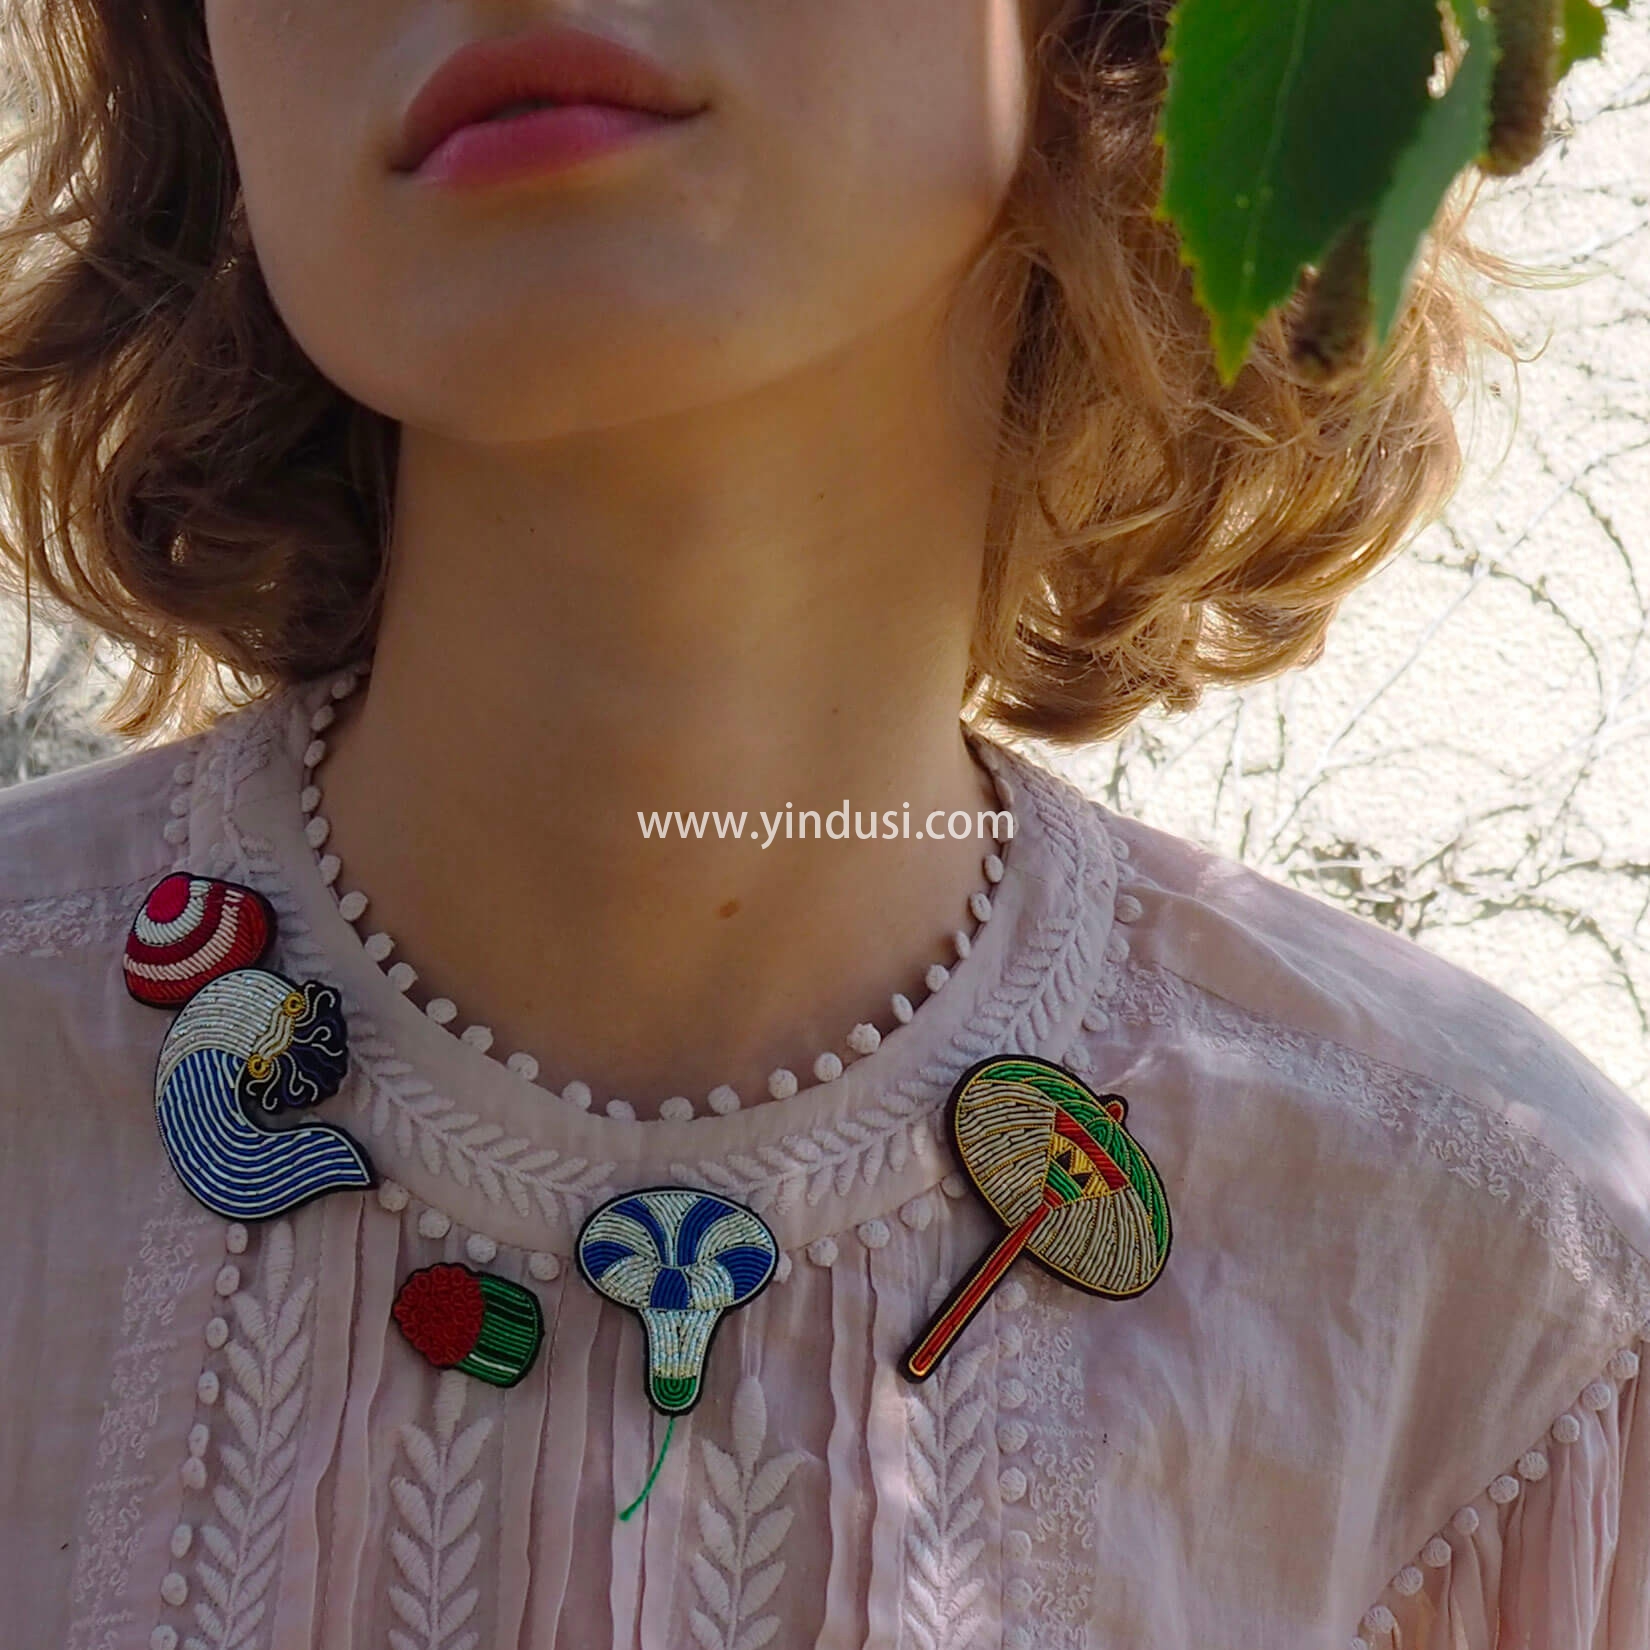 法国小众设计师品牌胸针Macon & Lesquoy 兩個創意無限的女孩將生活上的小事物轉化成可愛、有趣的配件飾品。